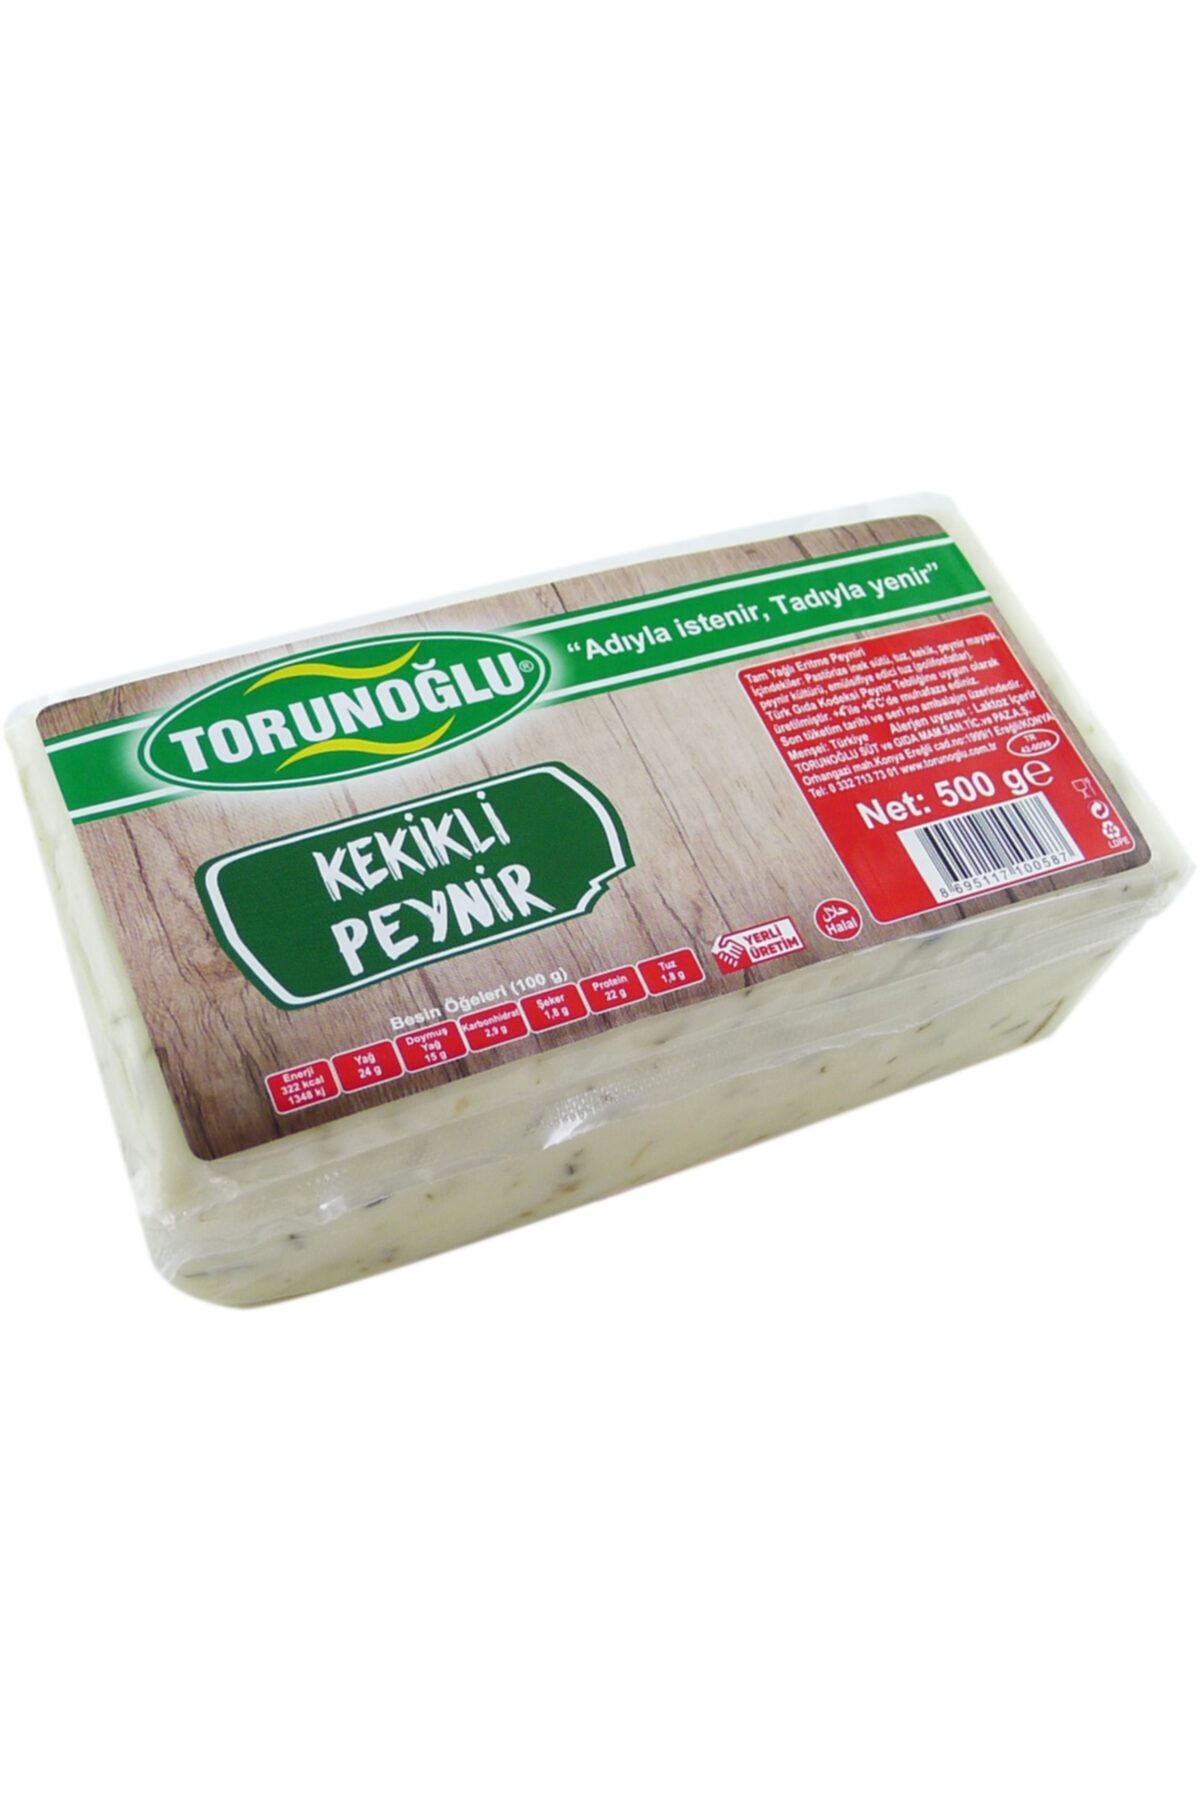 torunoğlü süt ve süt ürünleri Torunoğlu Kekikli Berendi Peyniri 500 G